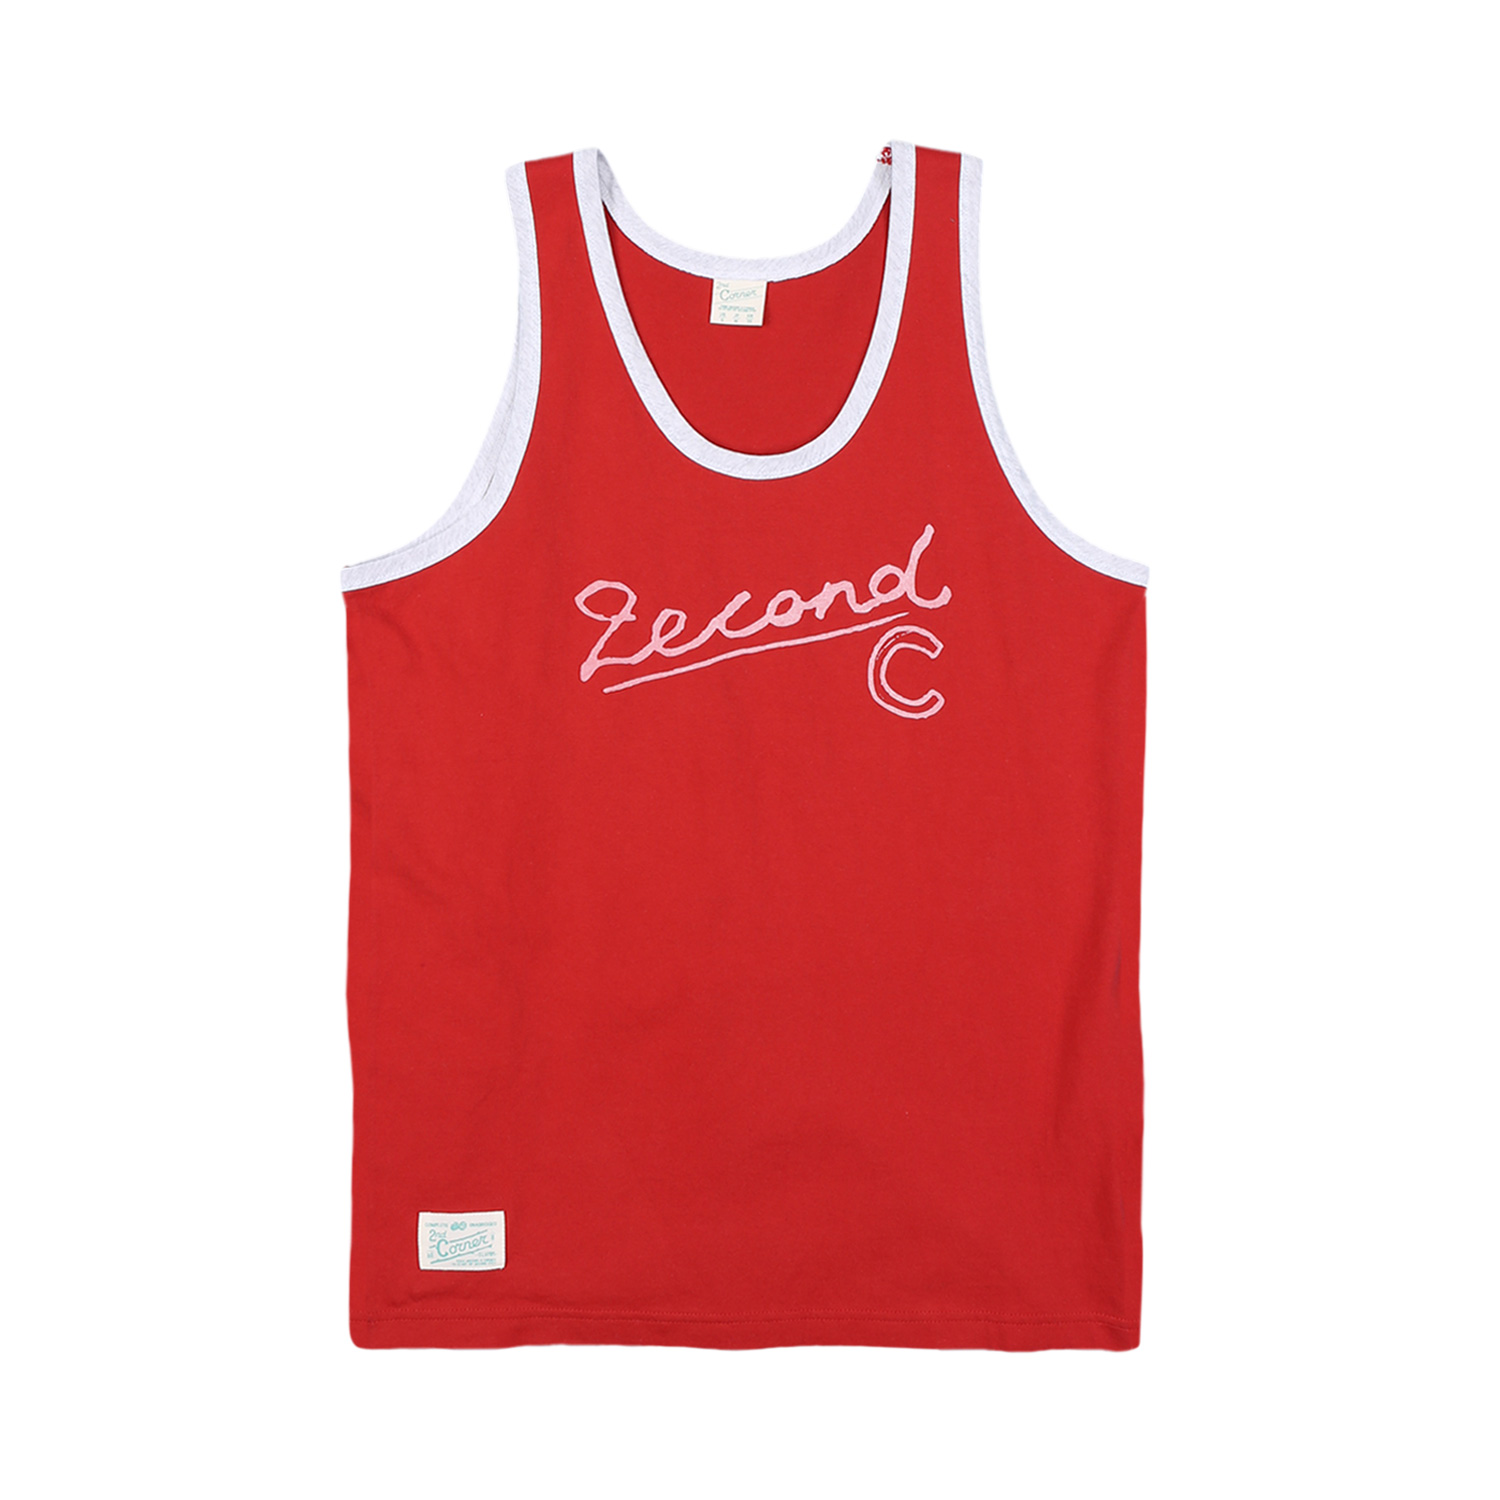 세컨드코너 2C 남성 민소매 티셔츠 / 그래픽 티셔츠 / 라운드넥 나시티 Kellogg - Coral